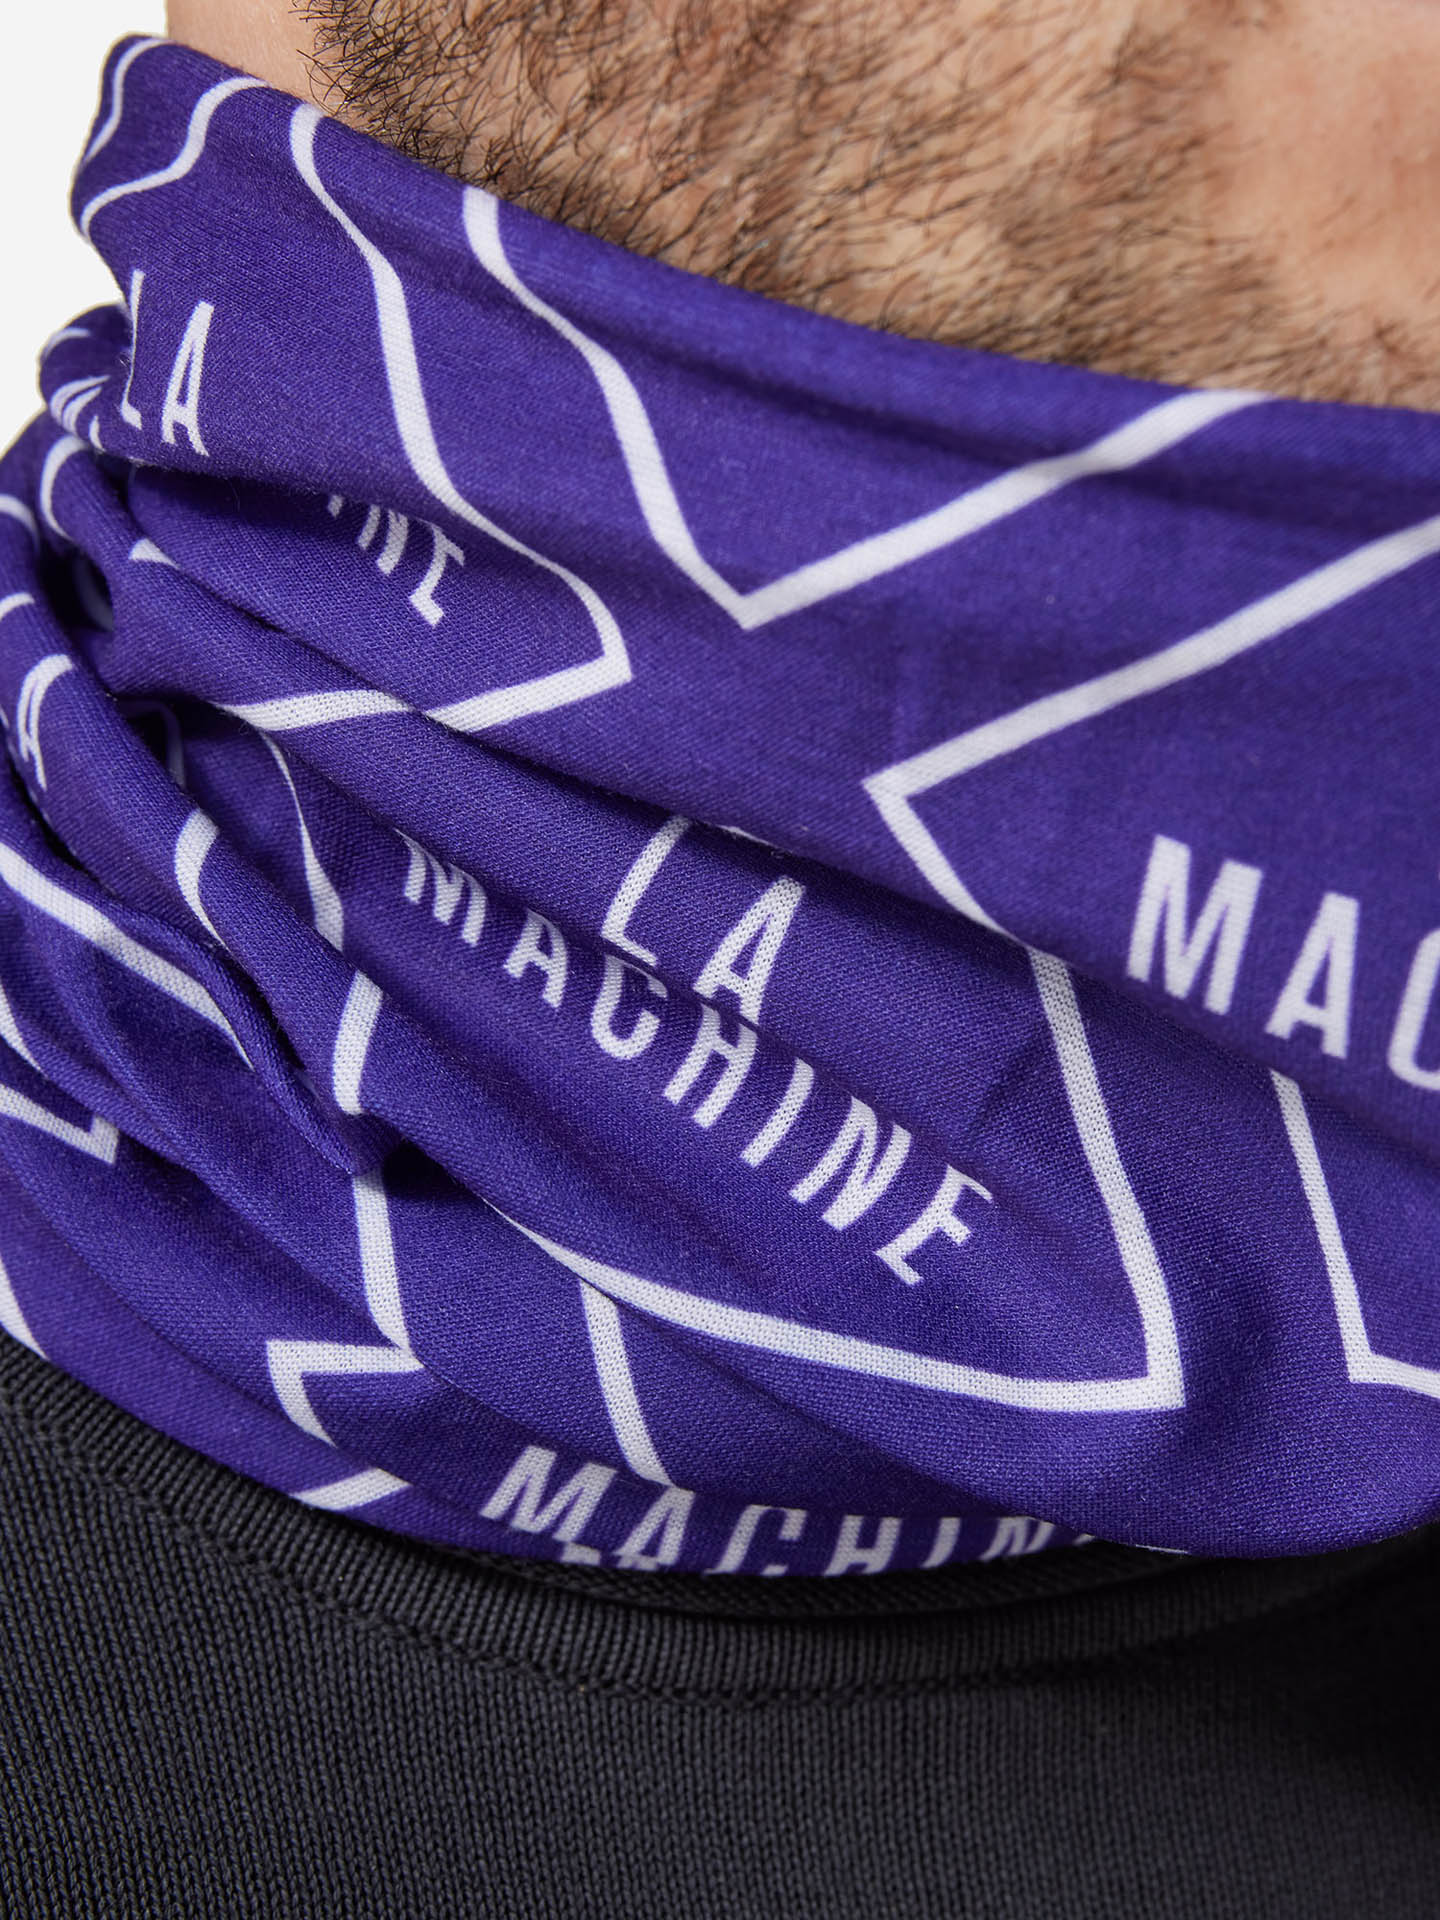 La Machine Neck Warmer – Purple -  La Machine Cycle Club.